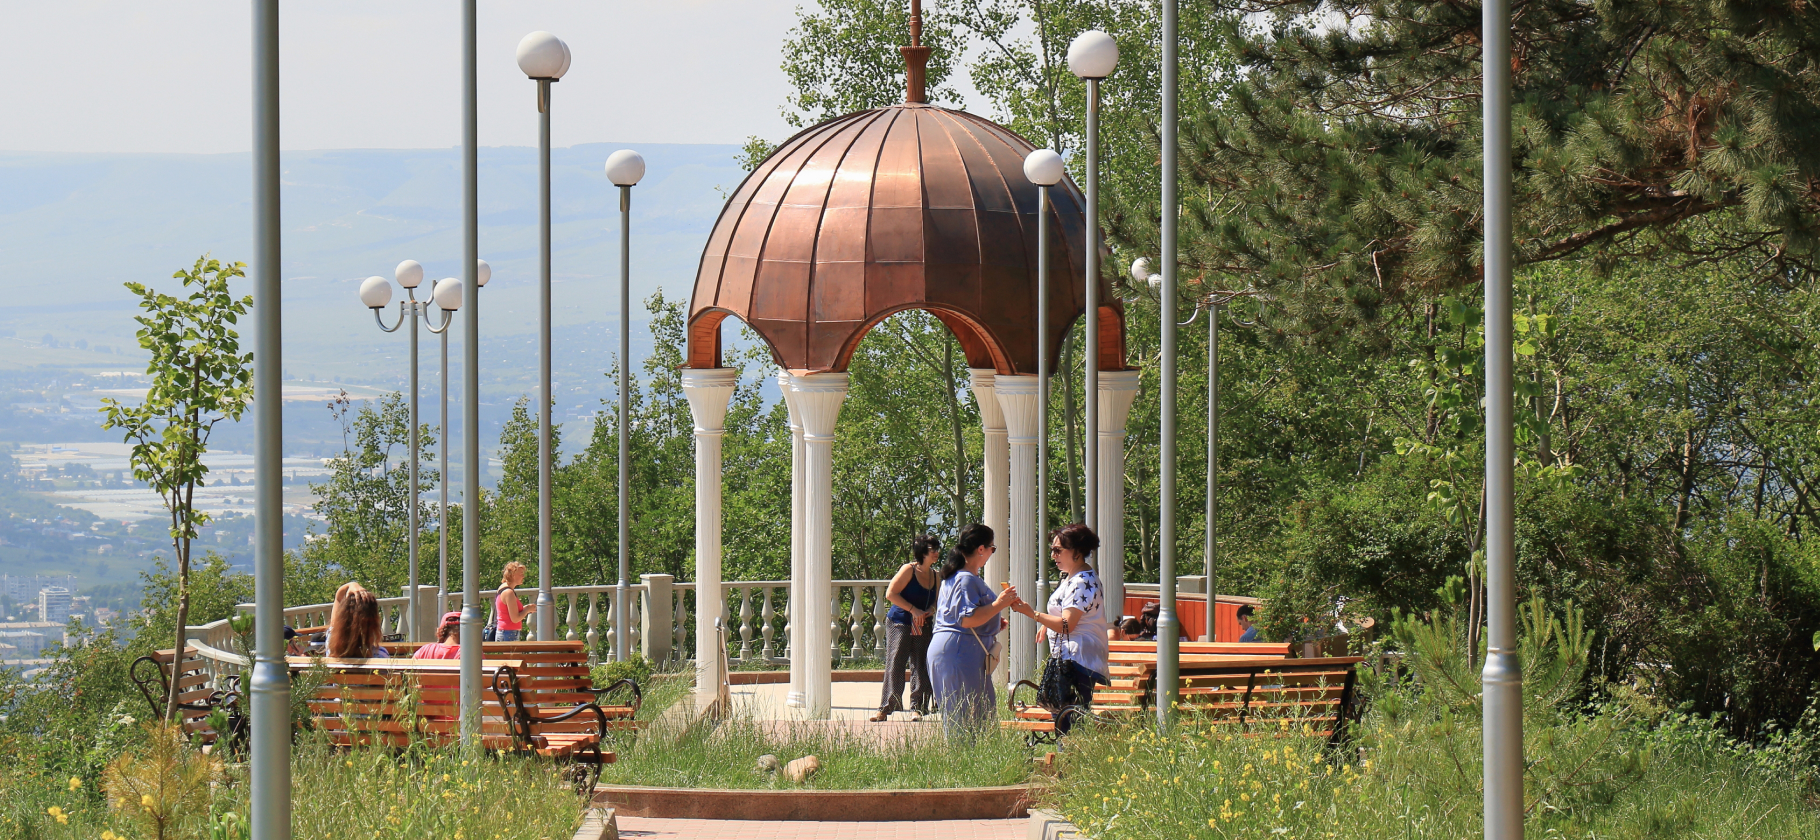 Отзывы туристов о Кисловод­ске: красивые парки, полез­ные процедуры и плохой сервис